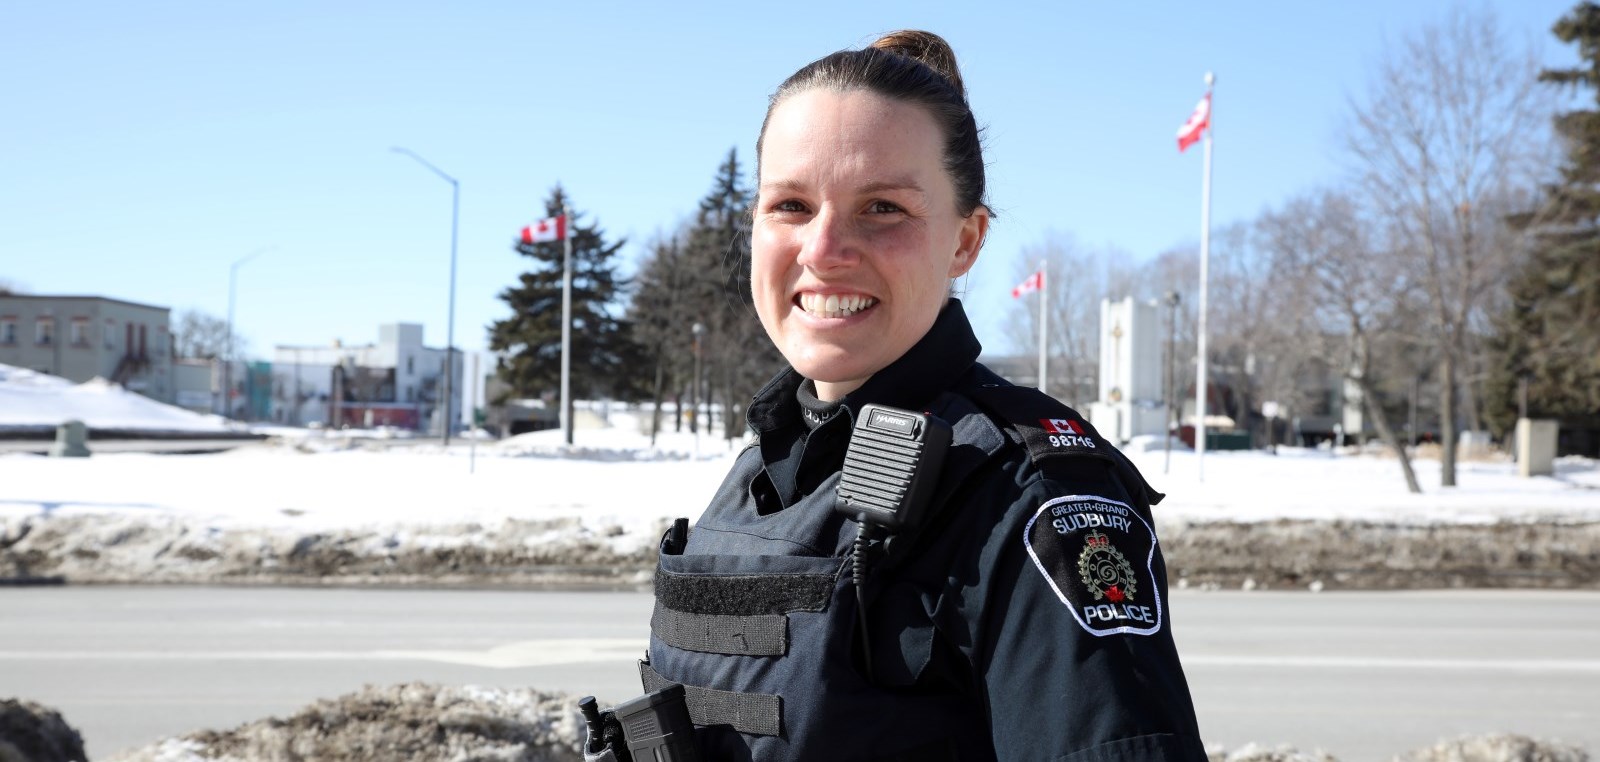 female Officer standing outside smiling